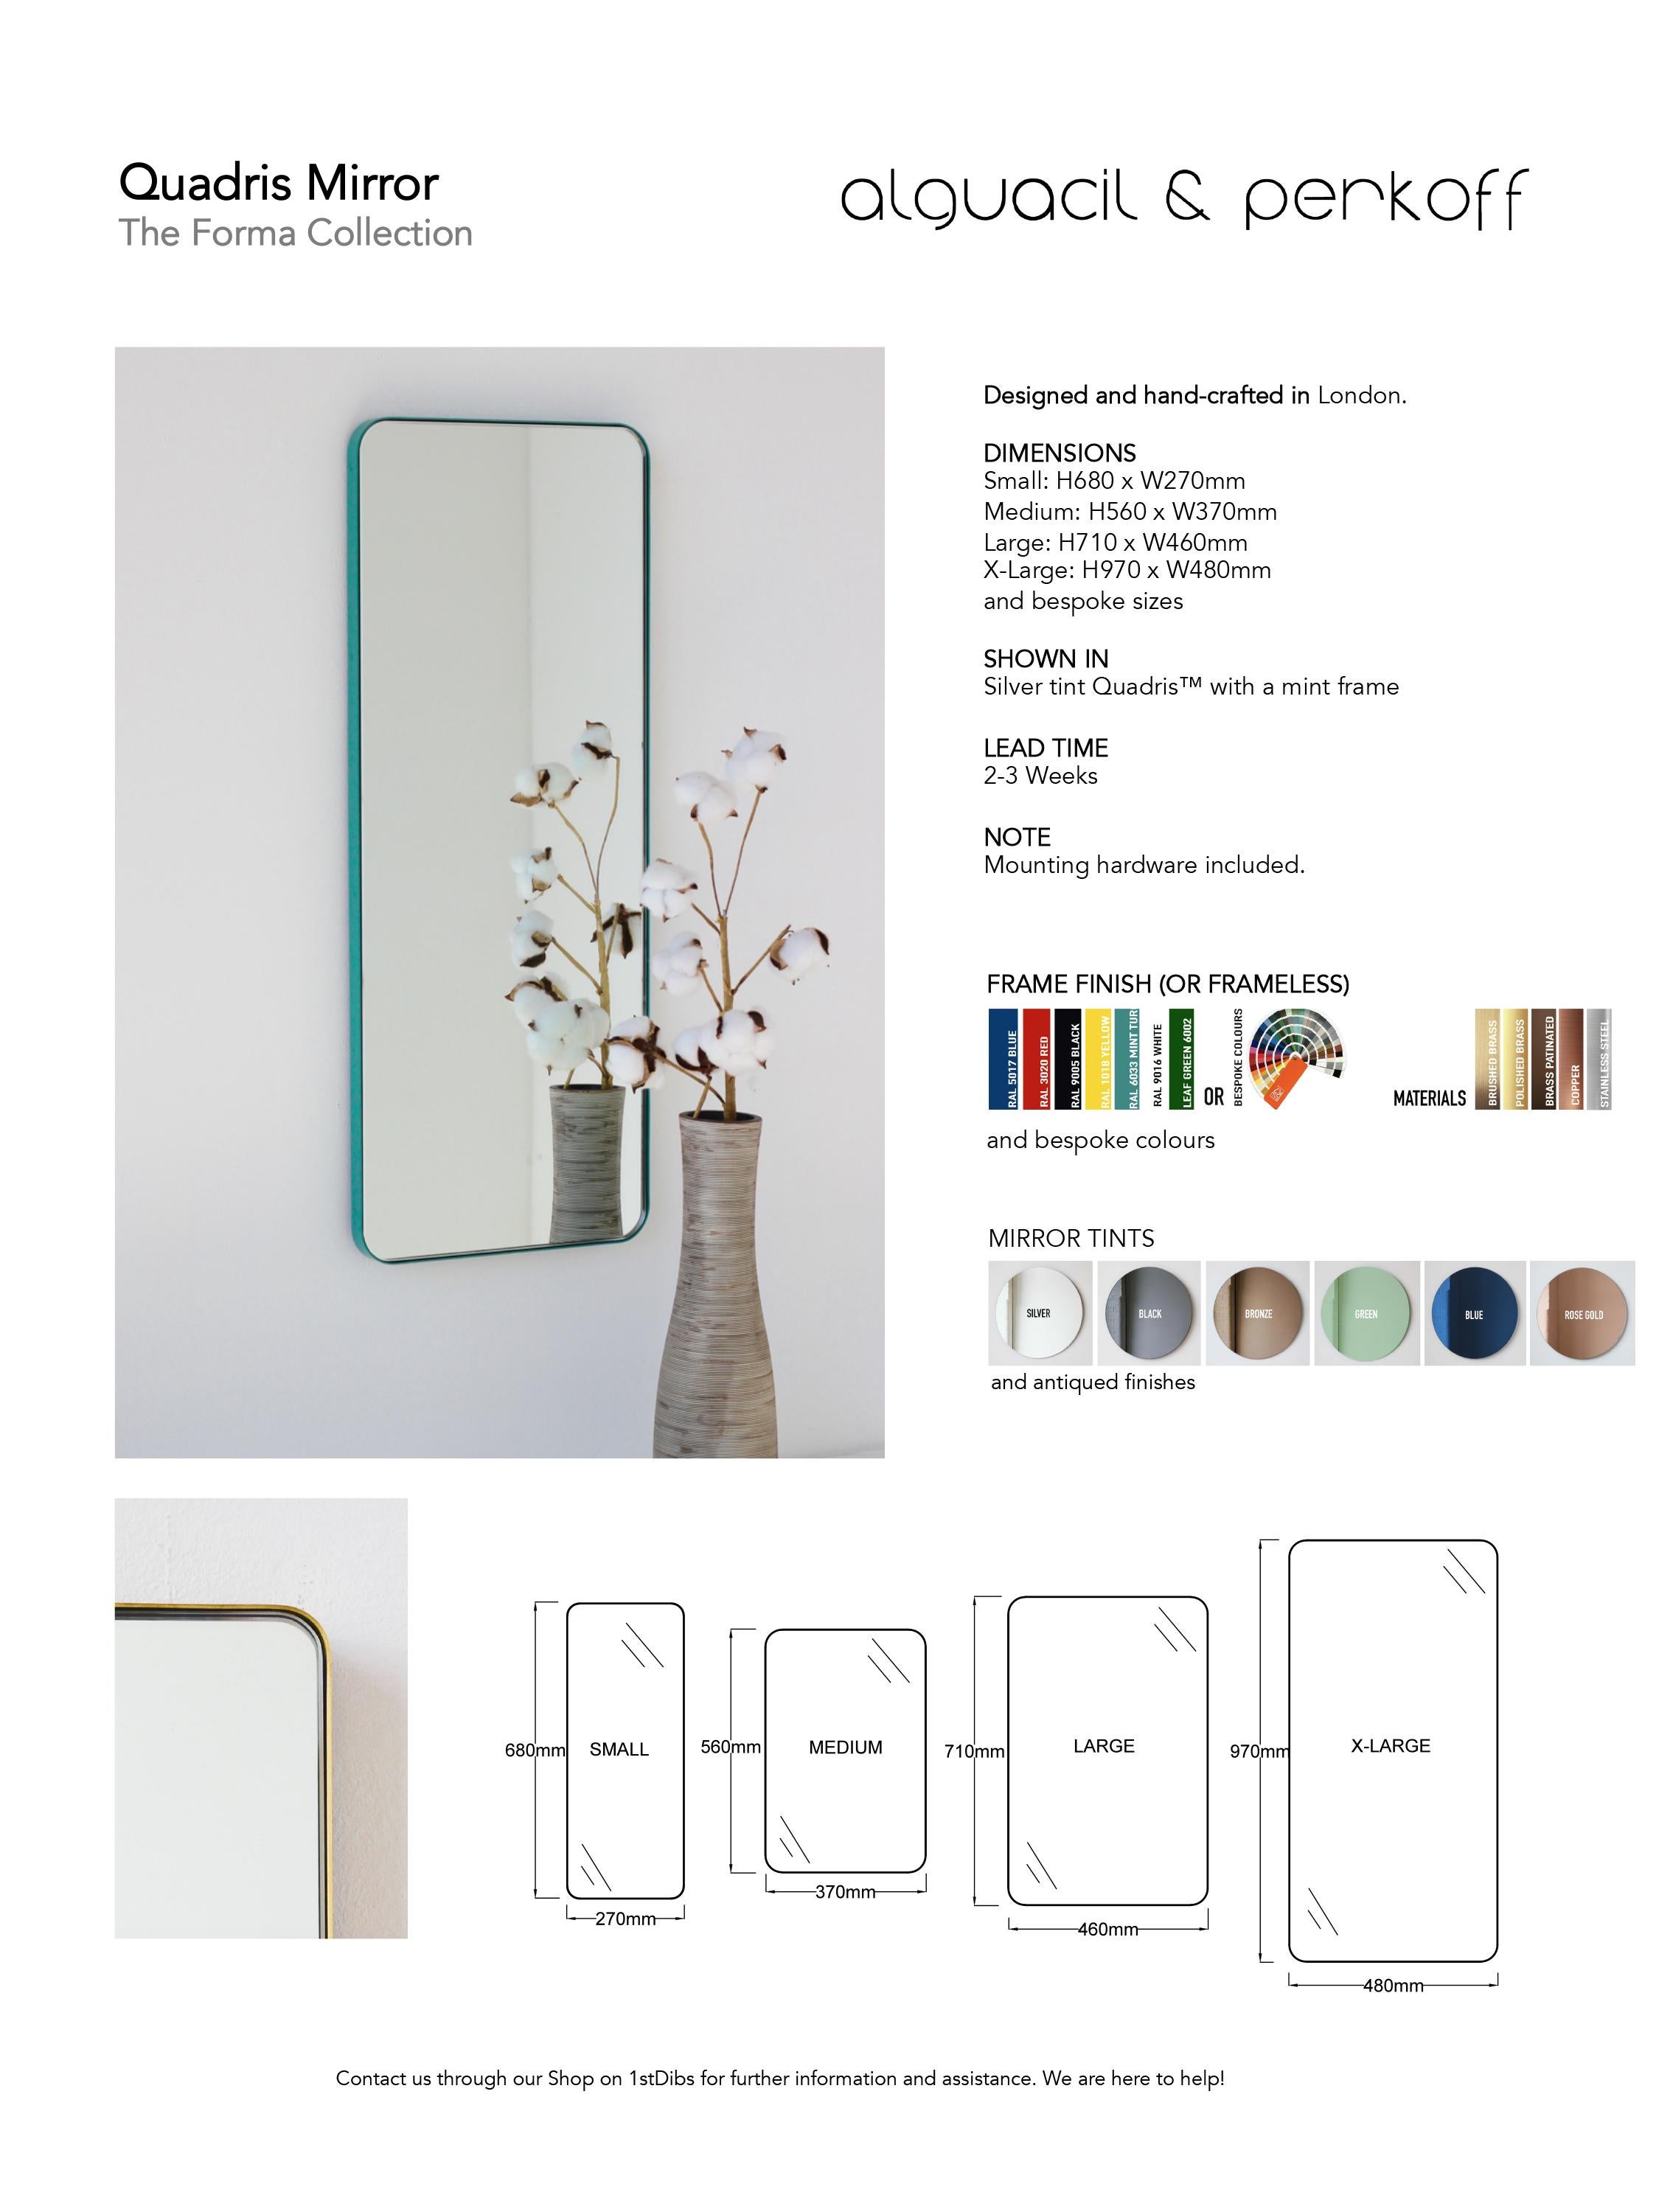 Quadris Rose Gold Rectangular Frameless Modern Mirror, Medium For Sale 3